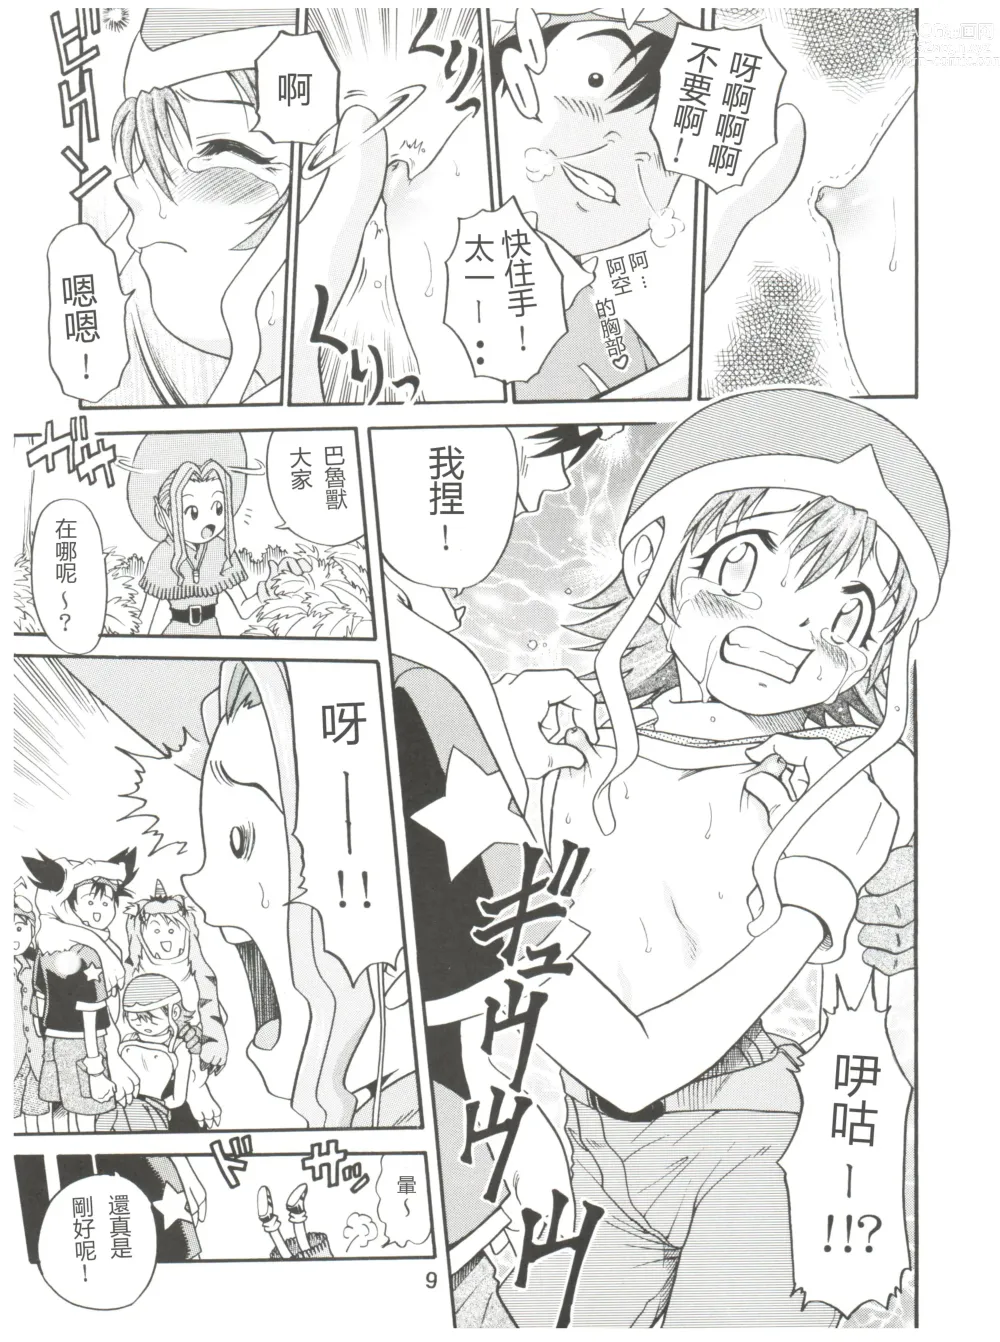 Page 9 of doujinshi Pichuu Pikachuu Daigyakusatsu